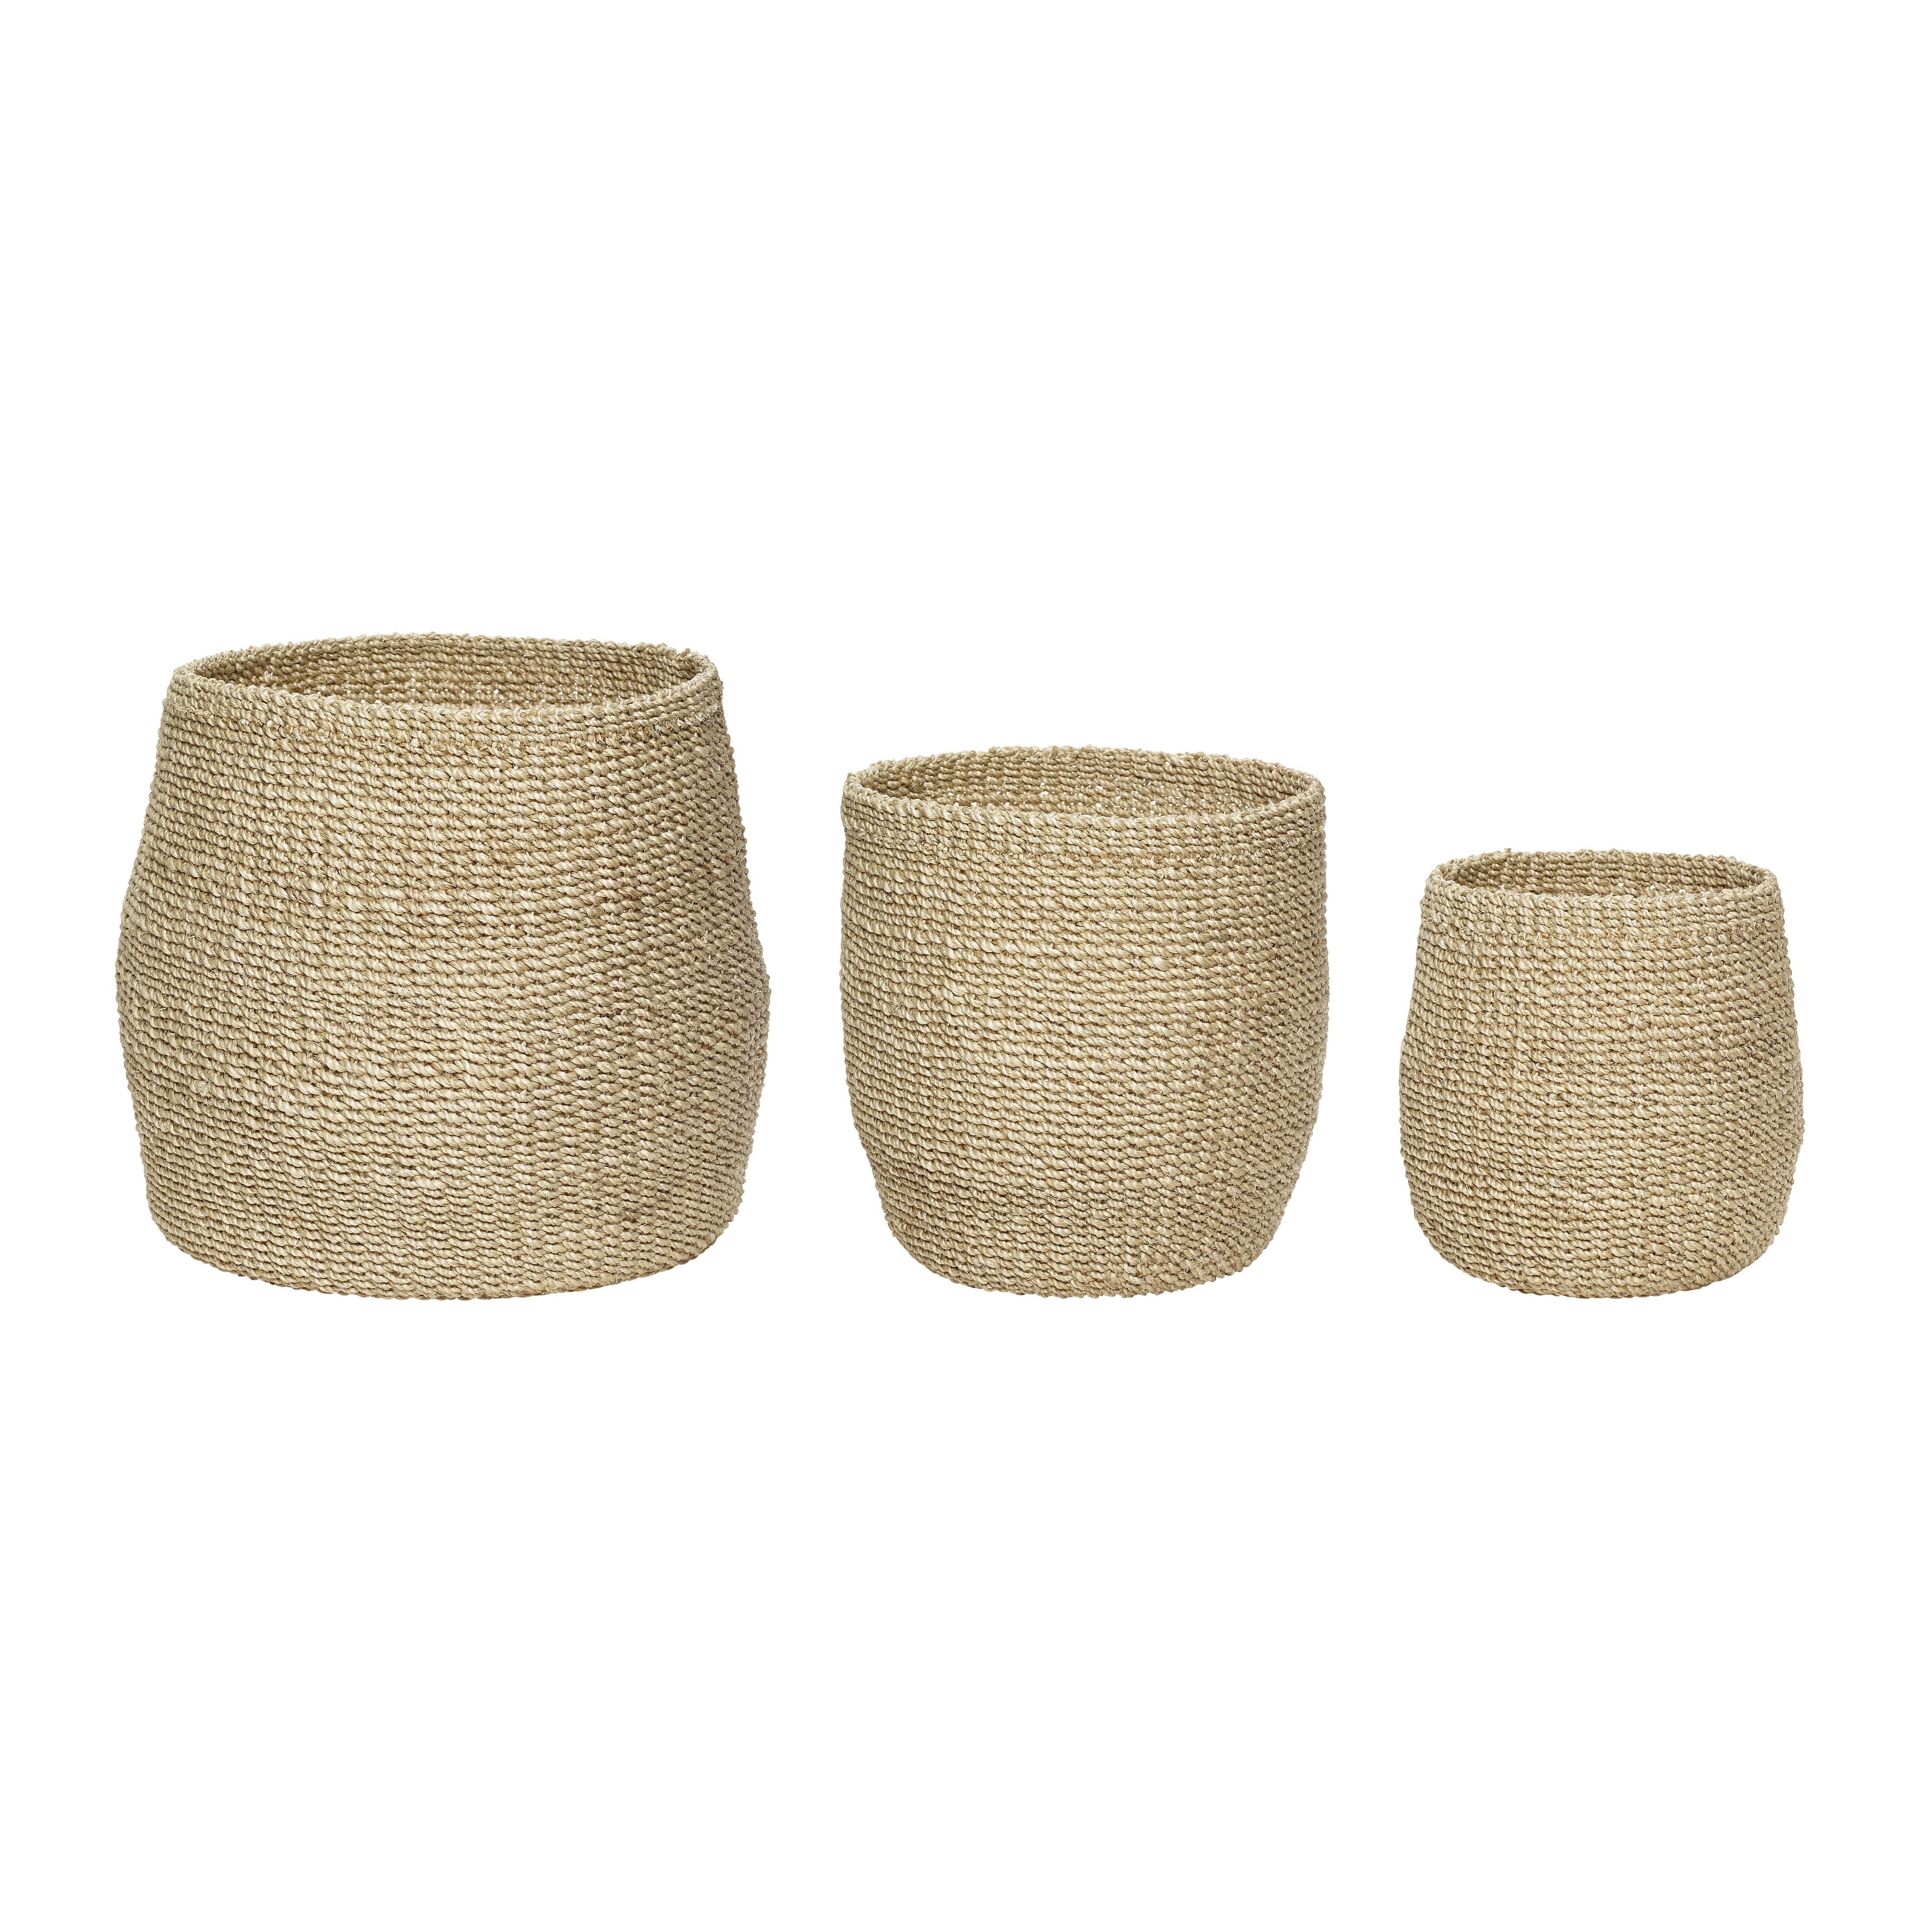 Hübsch Sort Baskets (Set Of 3), Natural